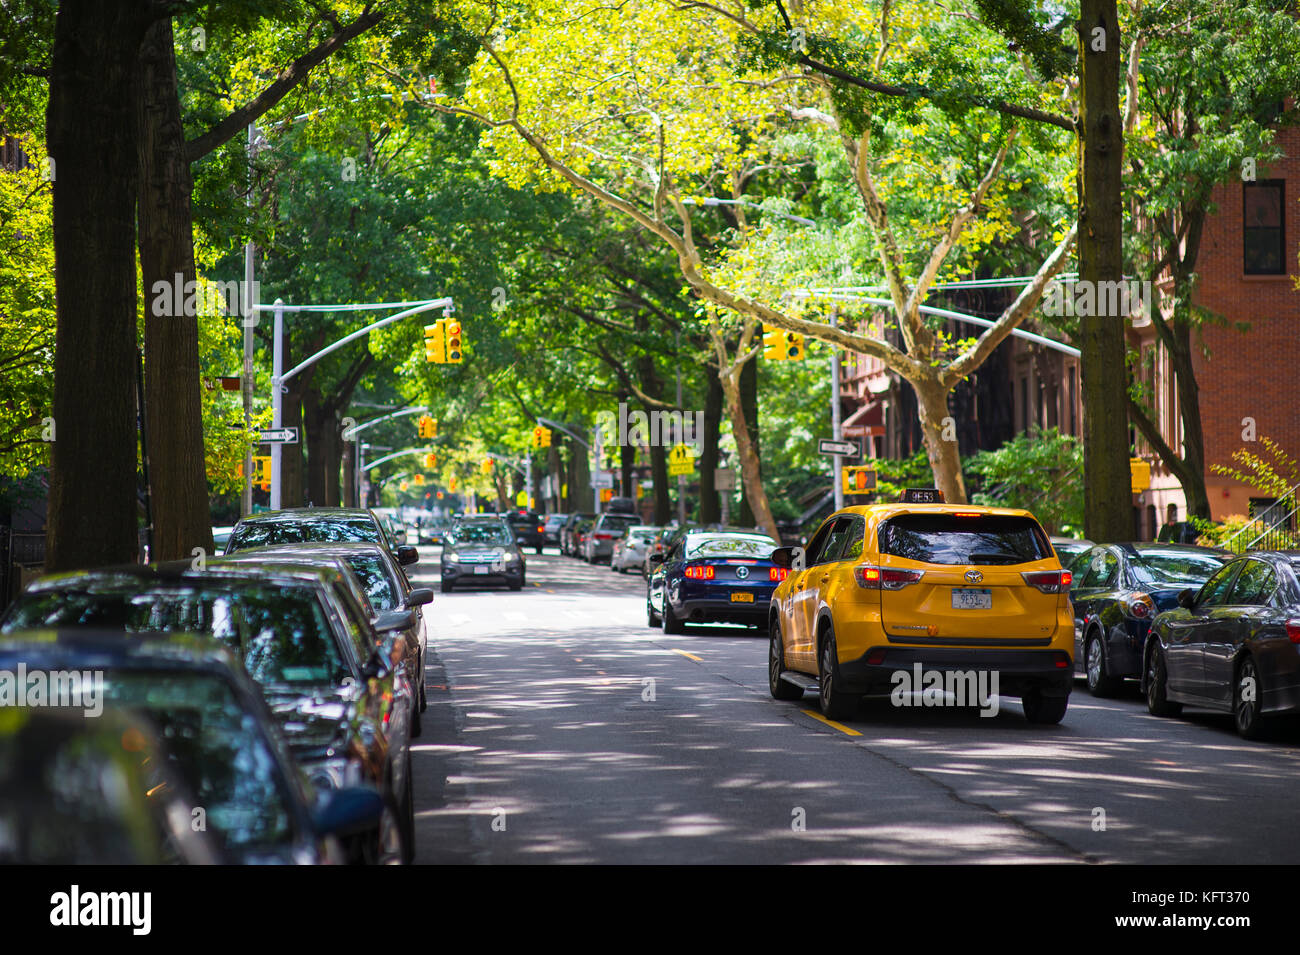 New York City - 27. August 2017: ein New Yorker yellow cab Antriebe an einer baumbestandenen Straße in Park Slope, Brooklyn. Stockfoto